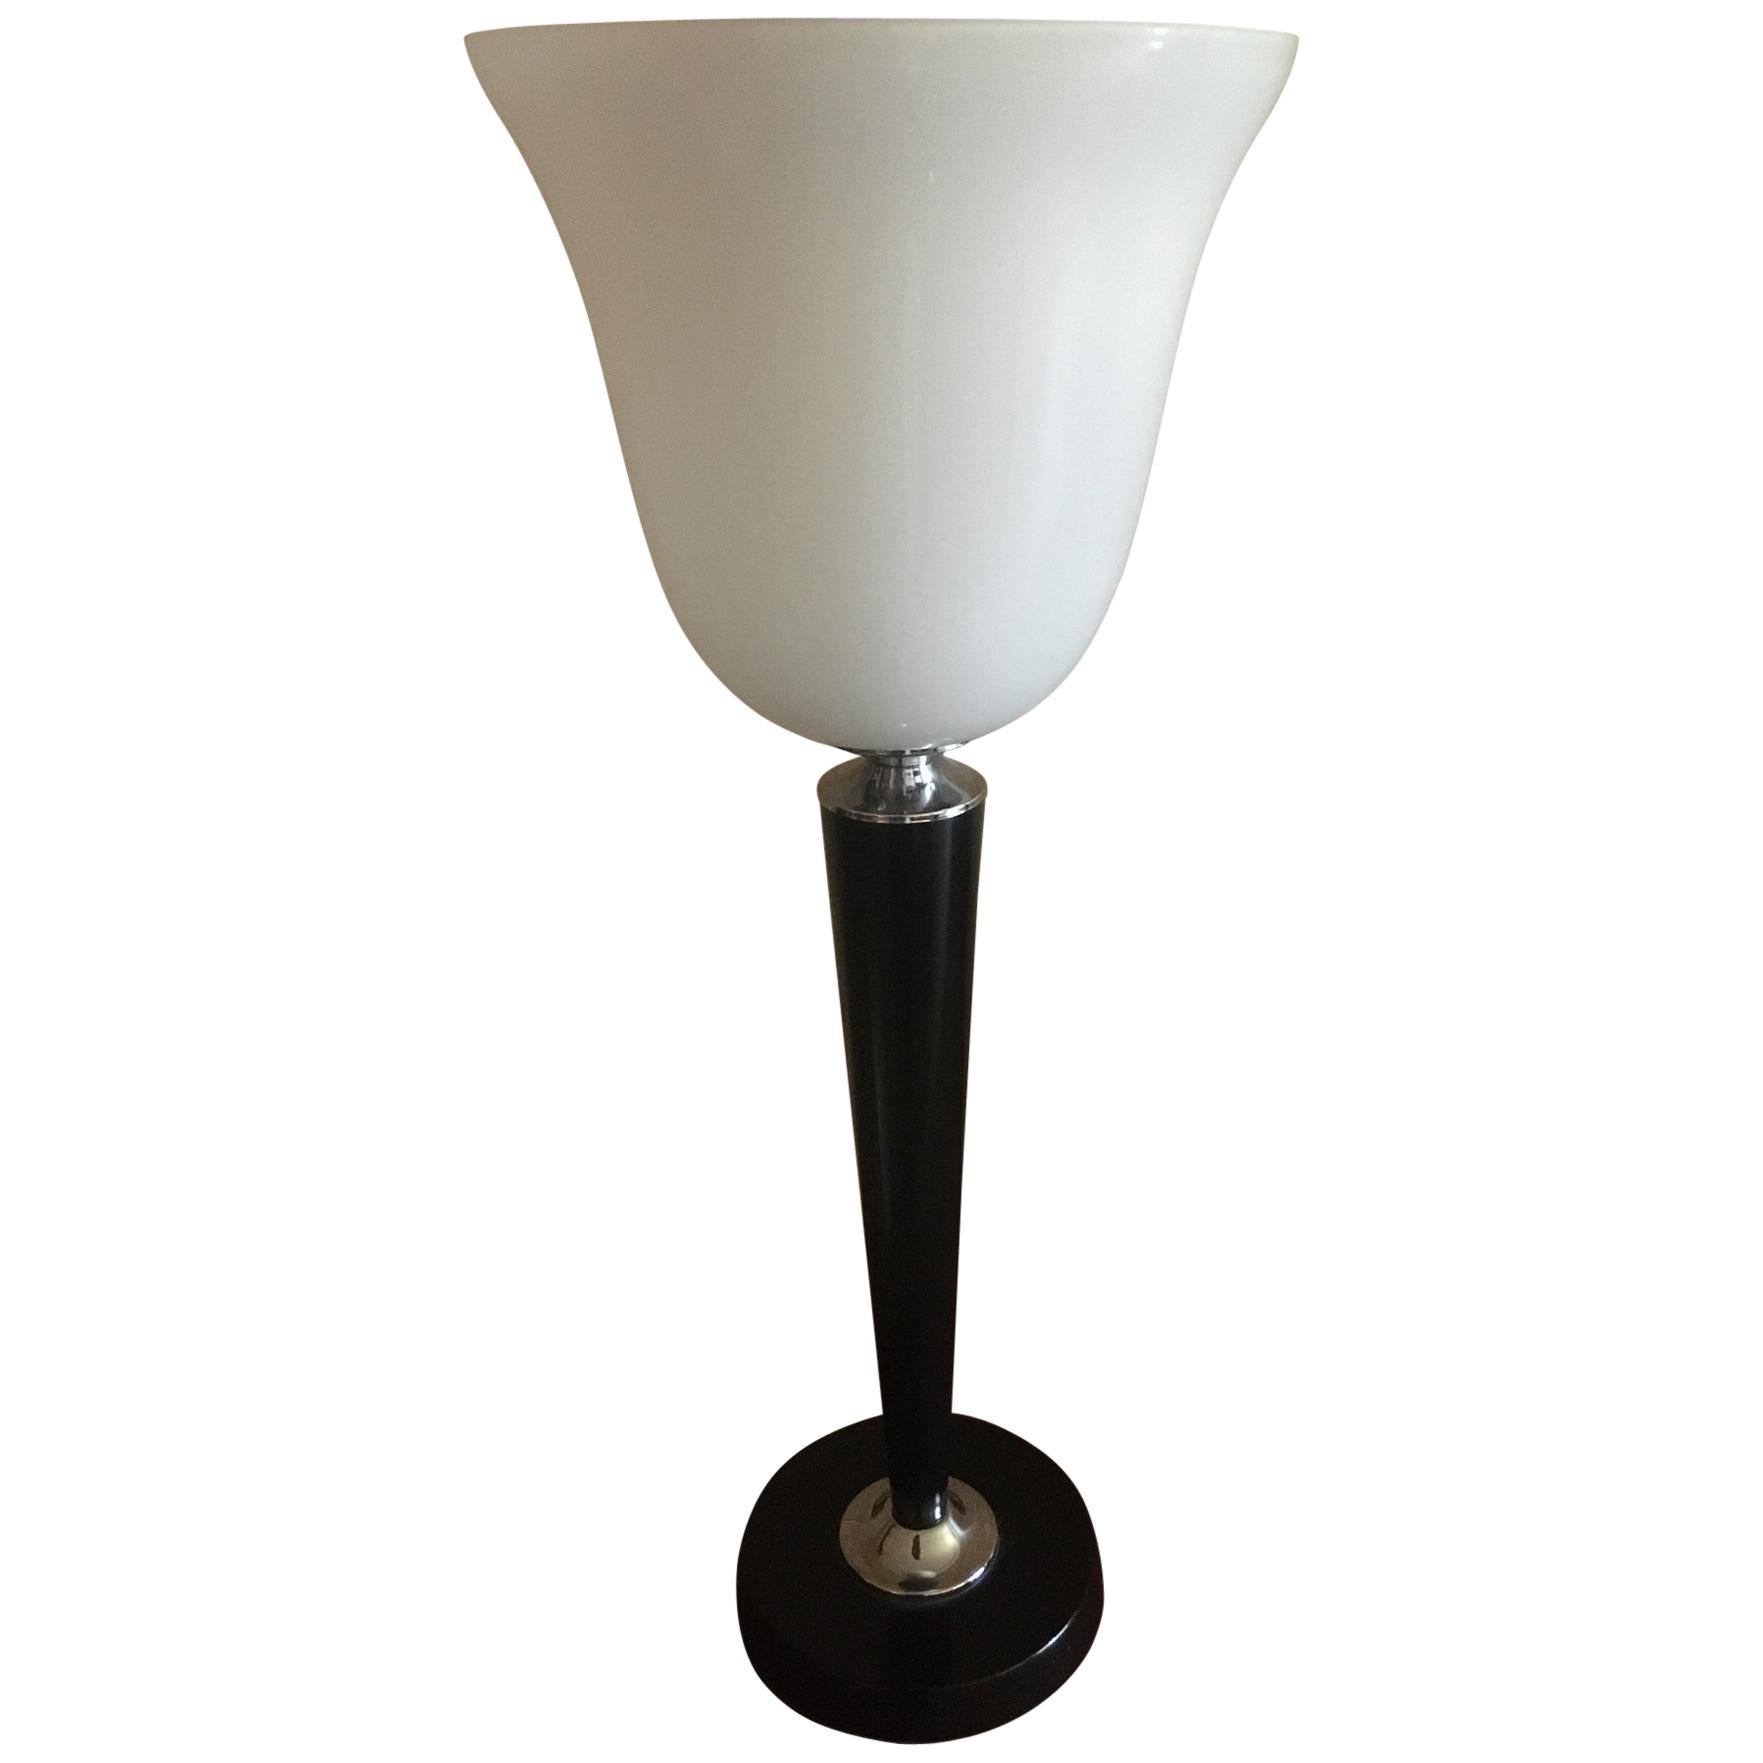 Lampe de table en bois laqué noir et opaline blanche de style Art déco français des années 1920